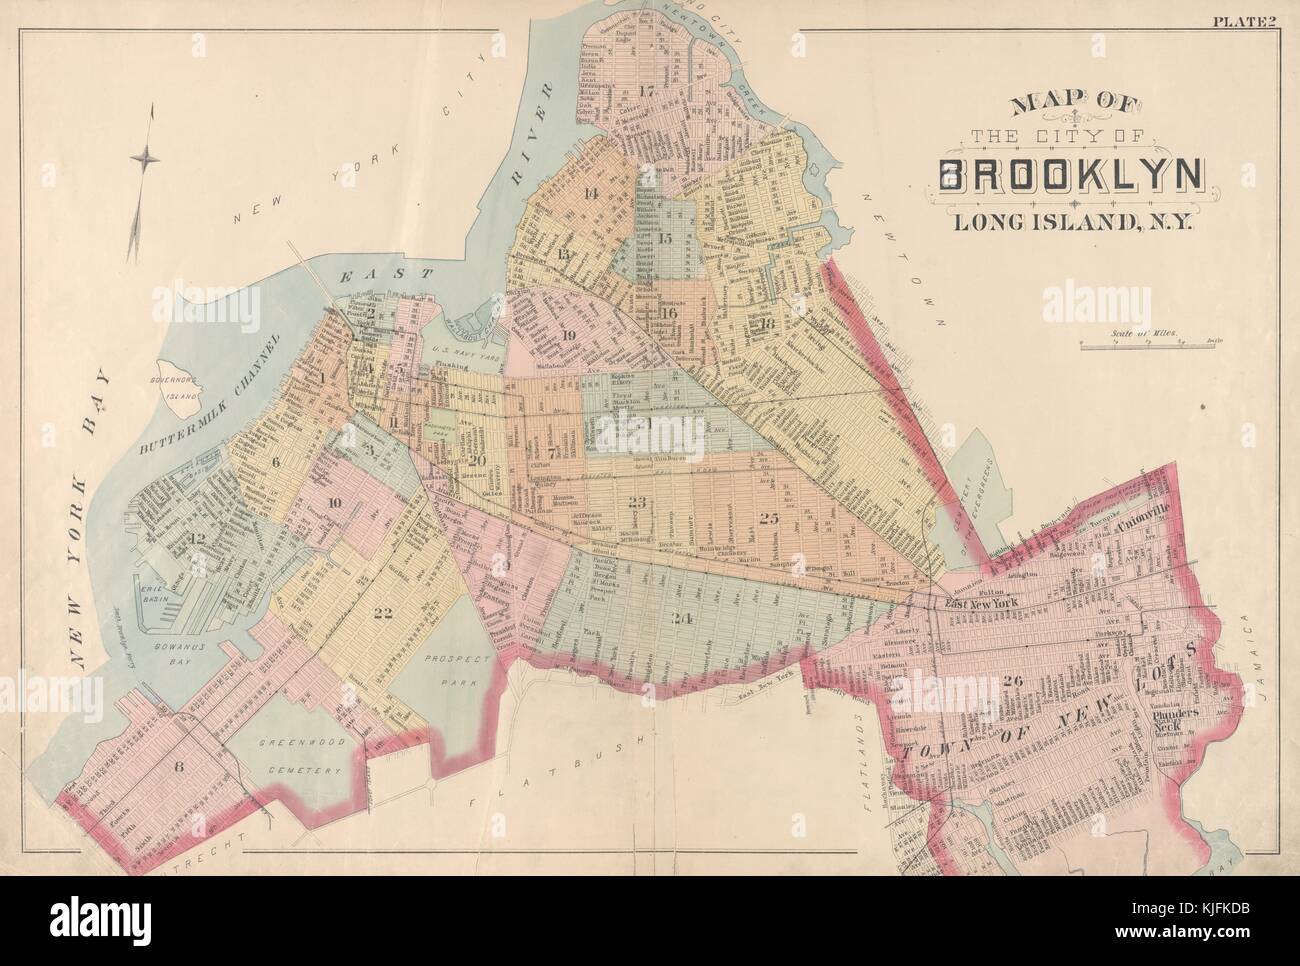 Un vintage mapa de la ciudad de Brooklyn, el mapa muestra el contorno de la ciudad de Brooklyn como aparecía en el momento de la publicación, incluye 26 barrios en que el municipio se dividió luego, Nueva York, 1891. de la biblioteca pública de Nueva York. Foto de stock